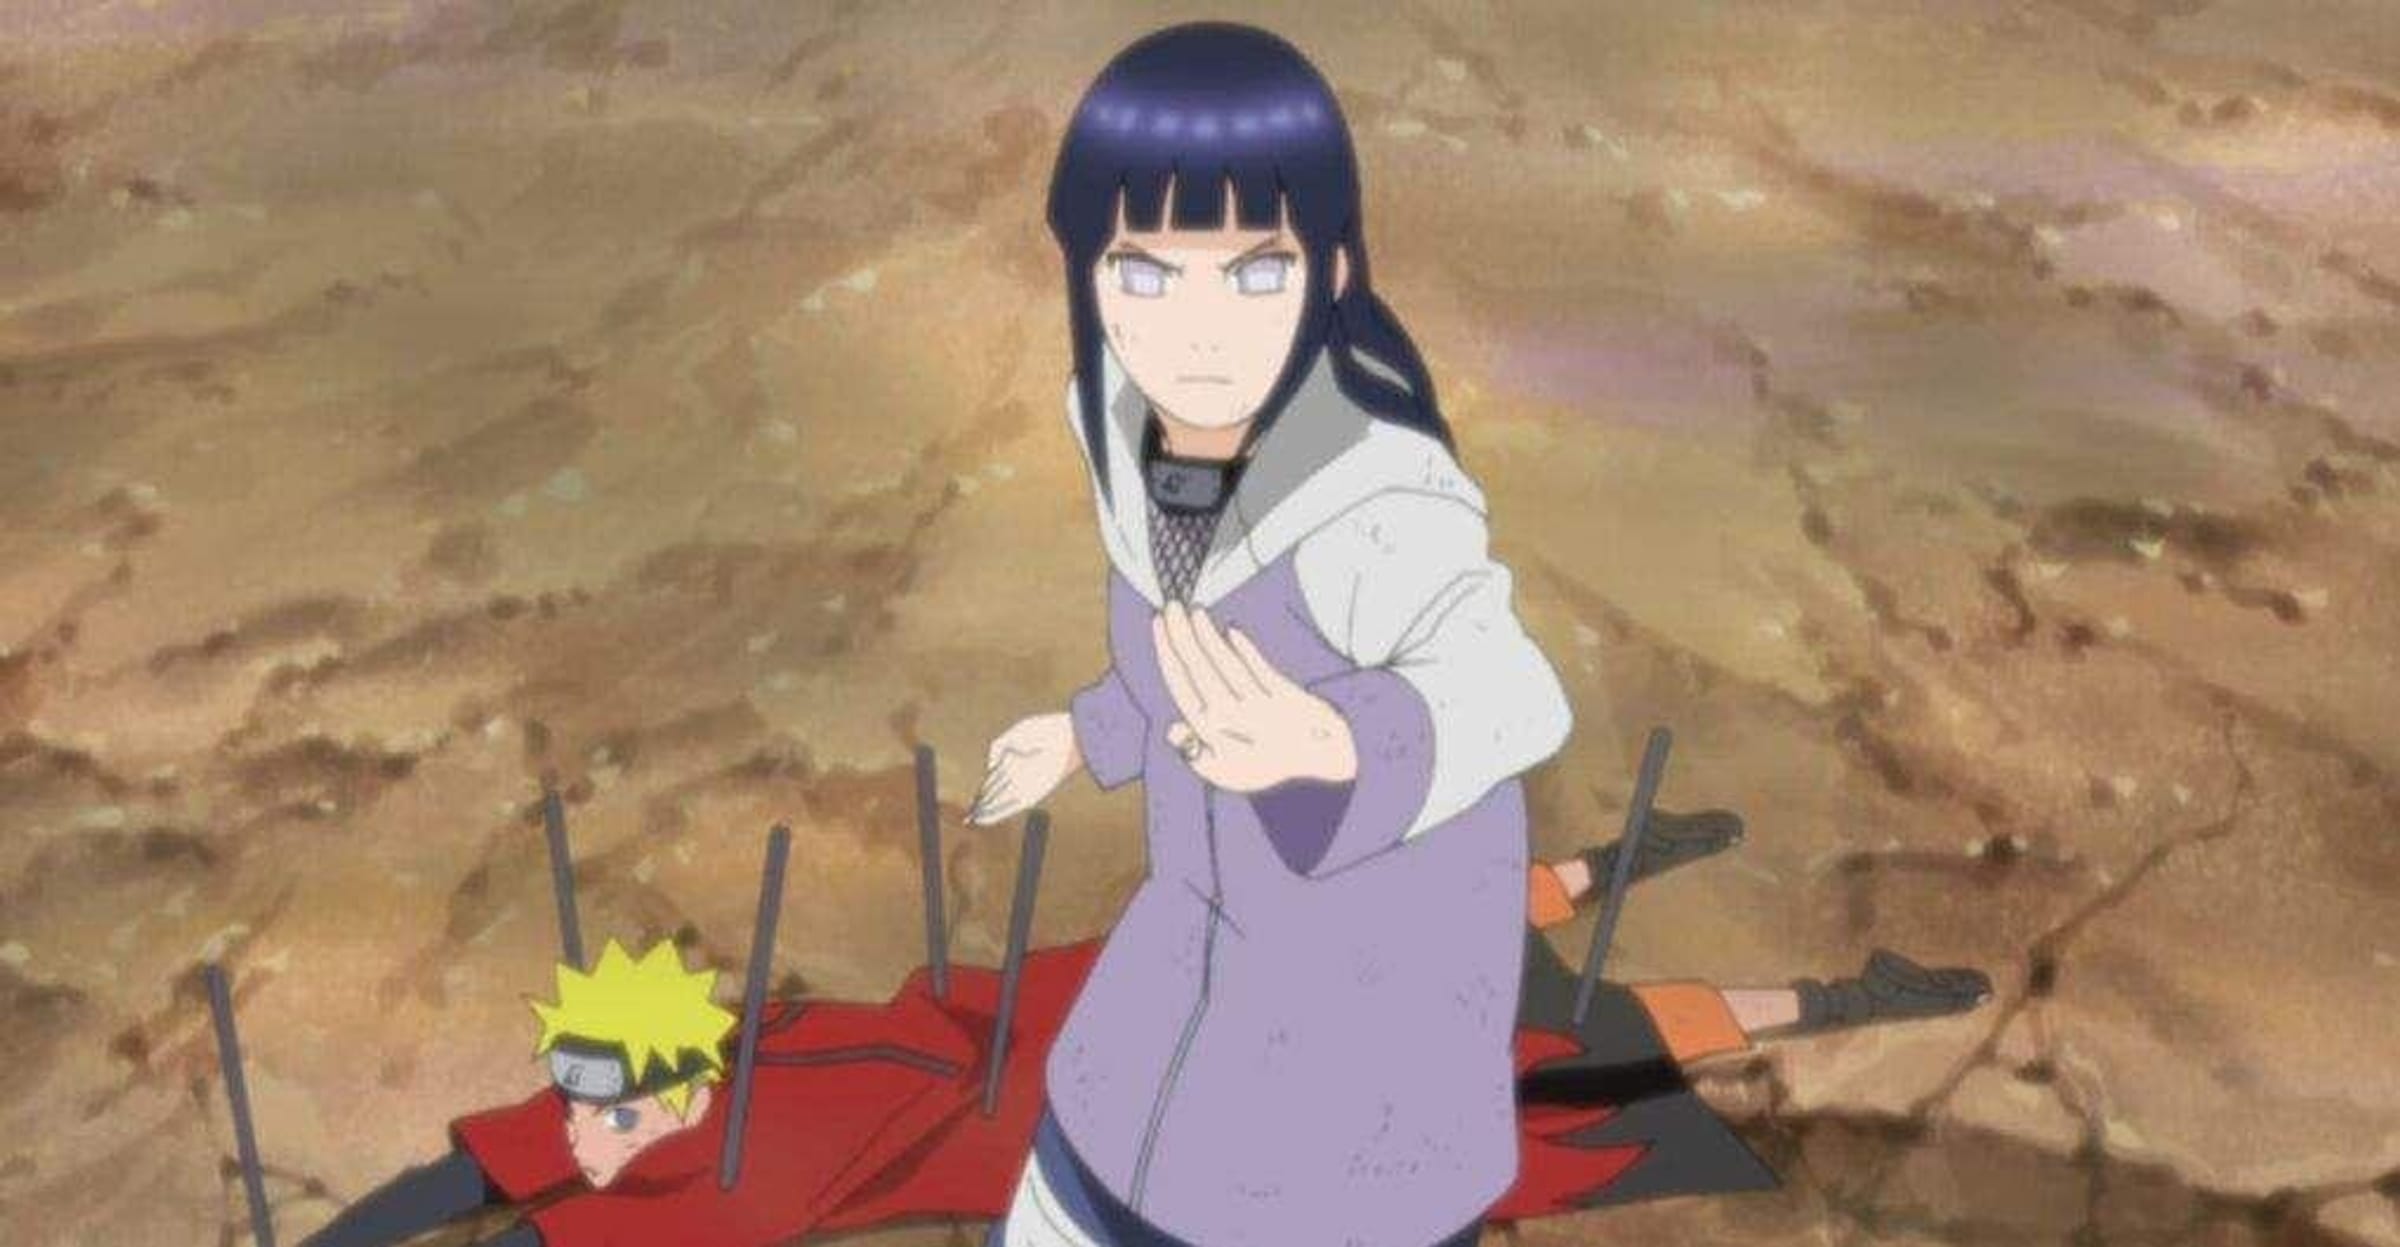 Naruto: 10 Best Episodes To Rewatch